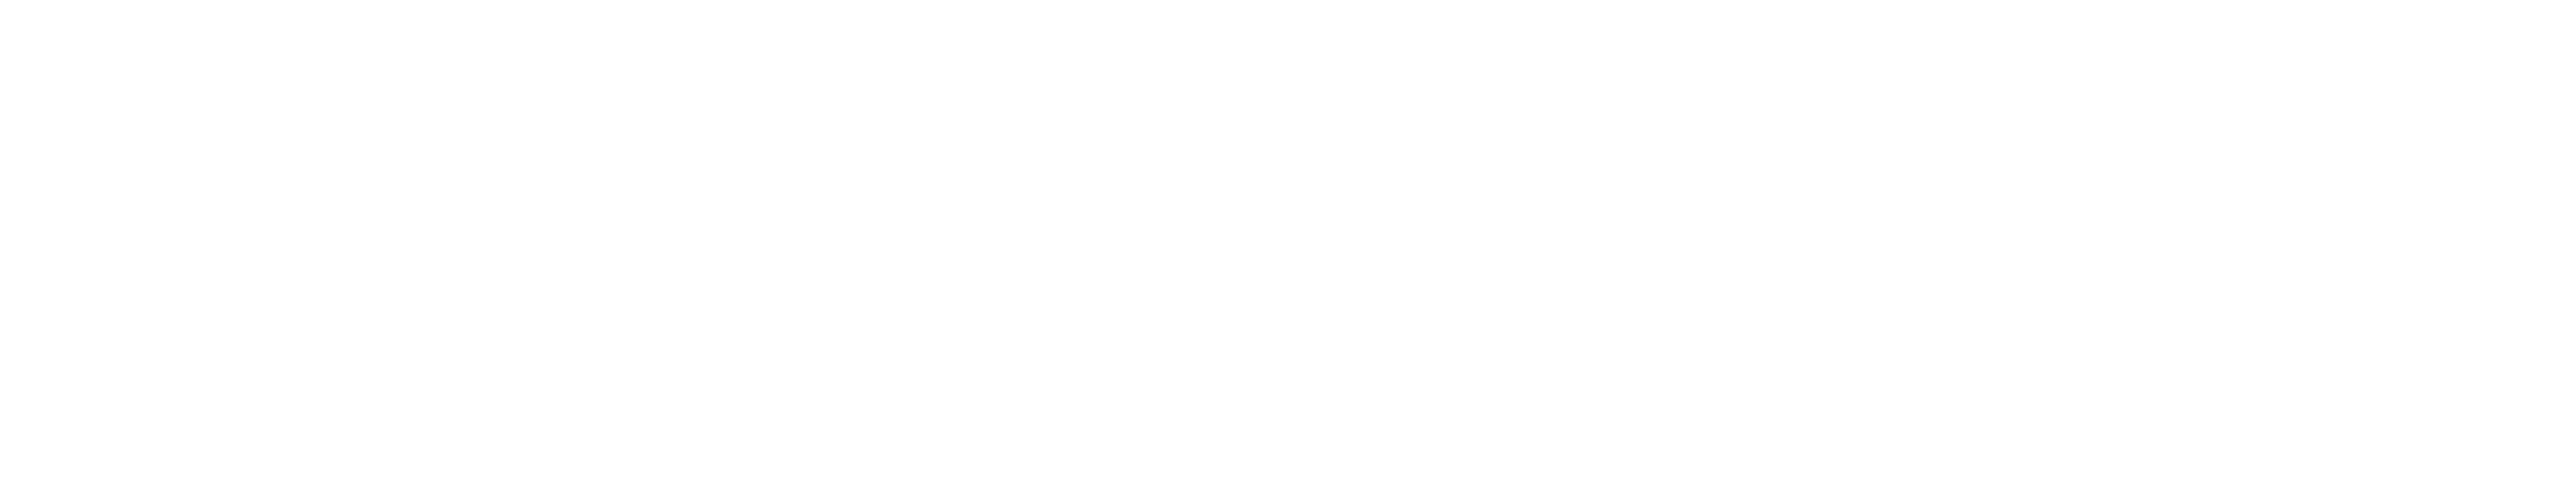 FINBOOT-Logo-White